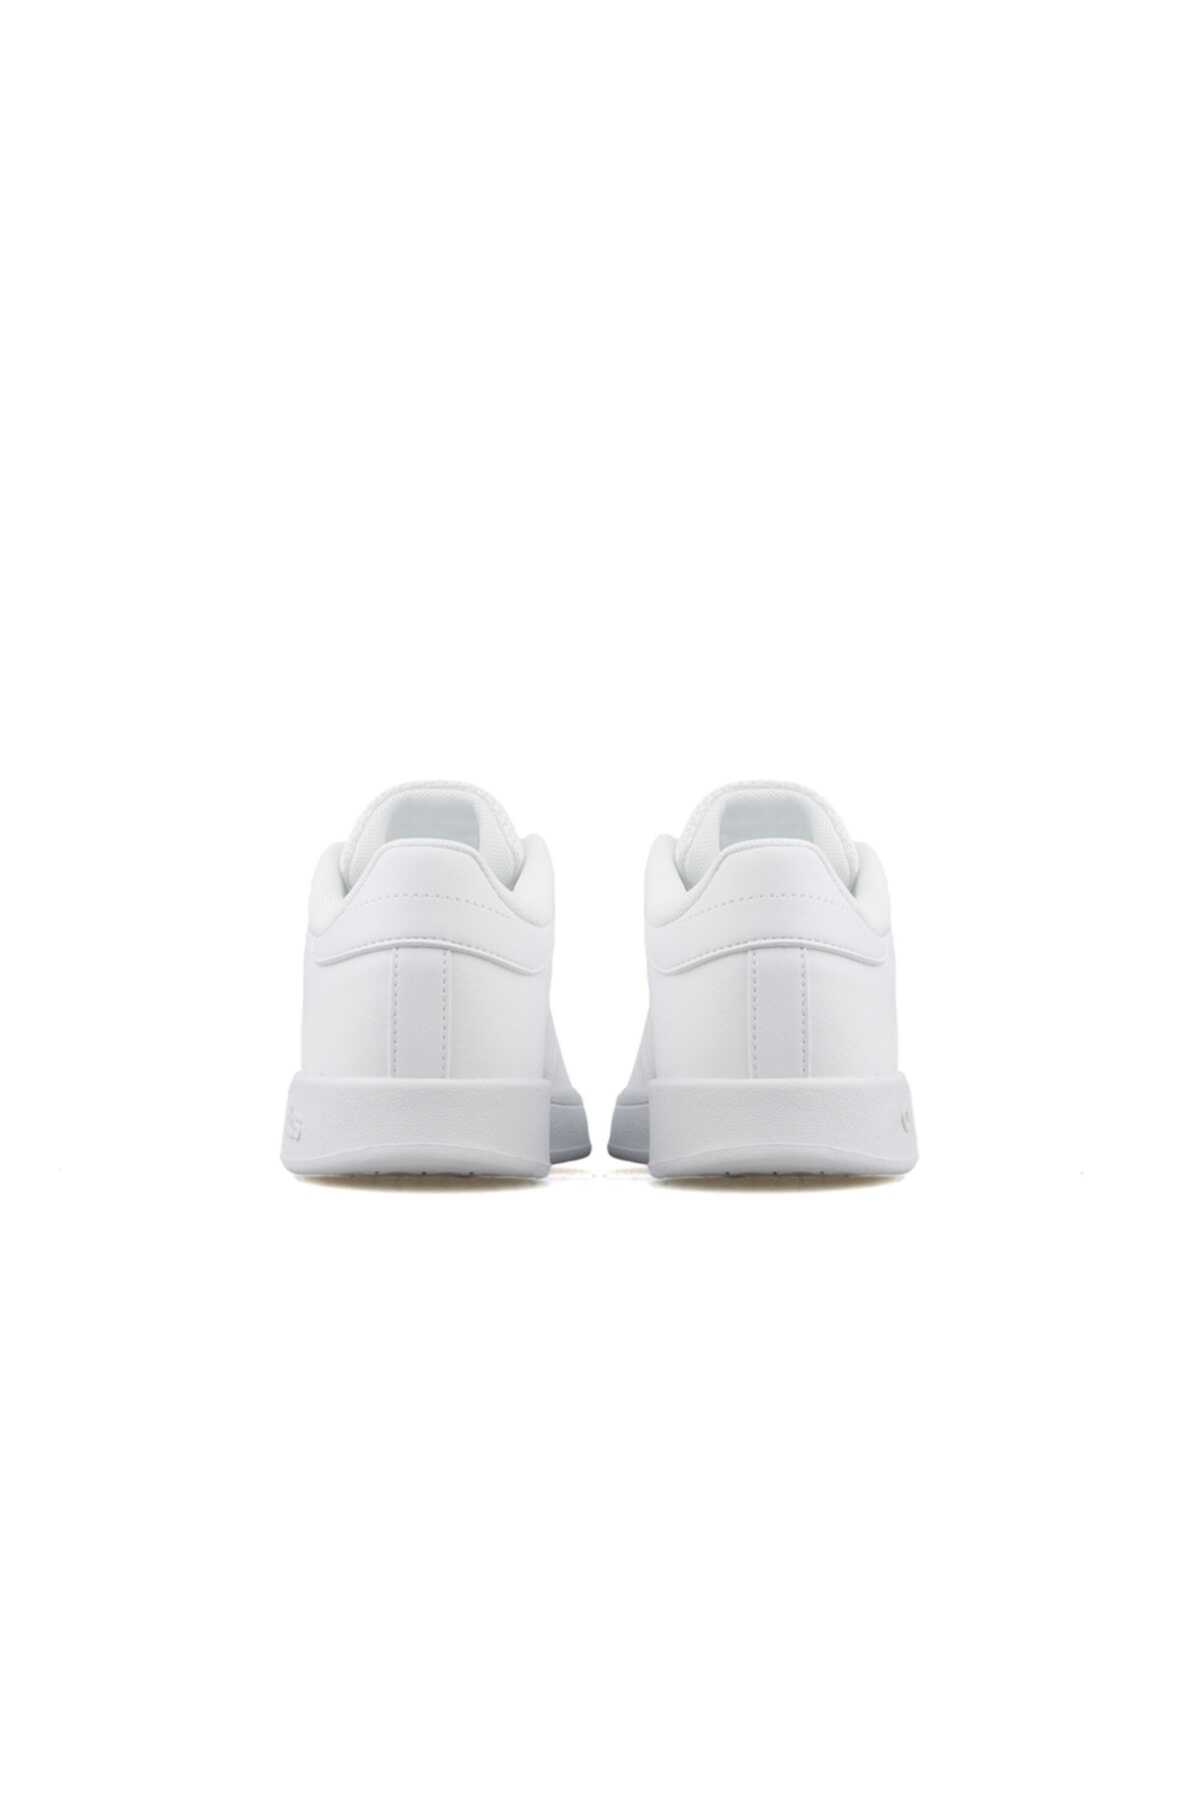 کفش تنیس یونیسکس سفید برند adidas 